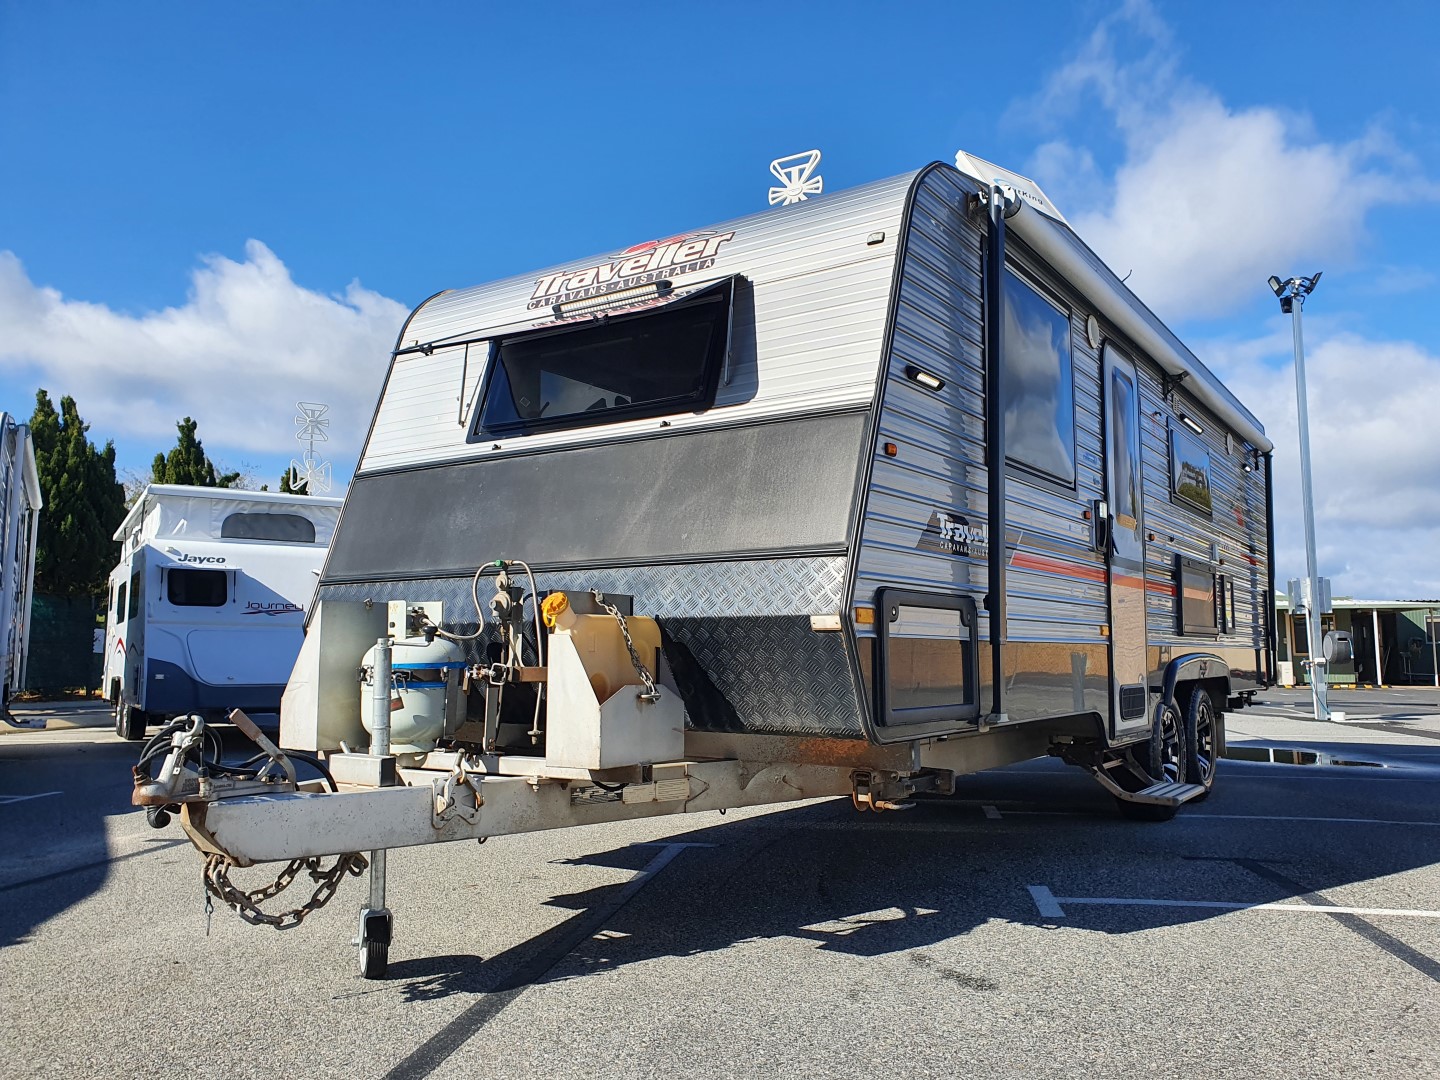 traveller caravans for sale